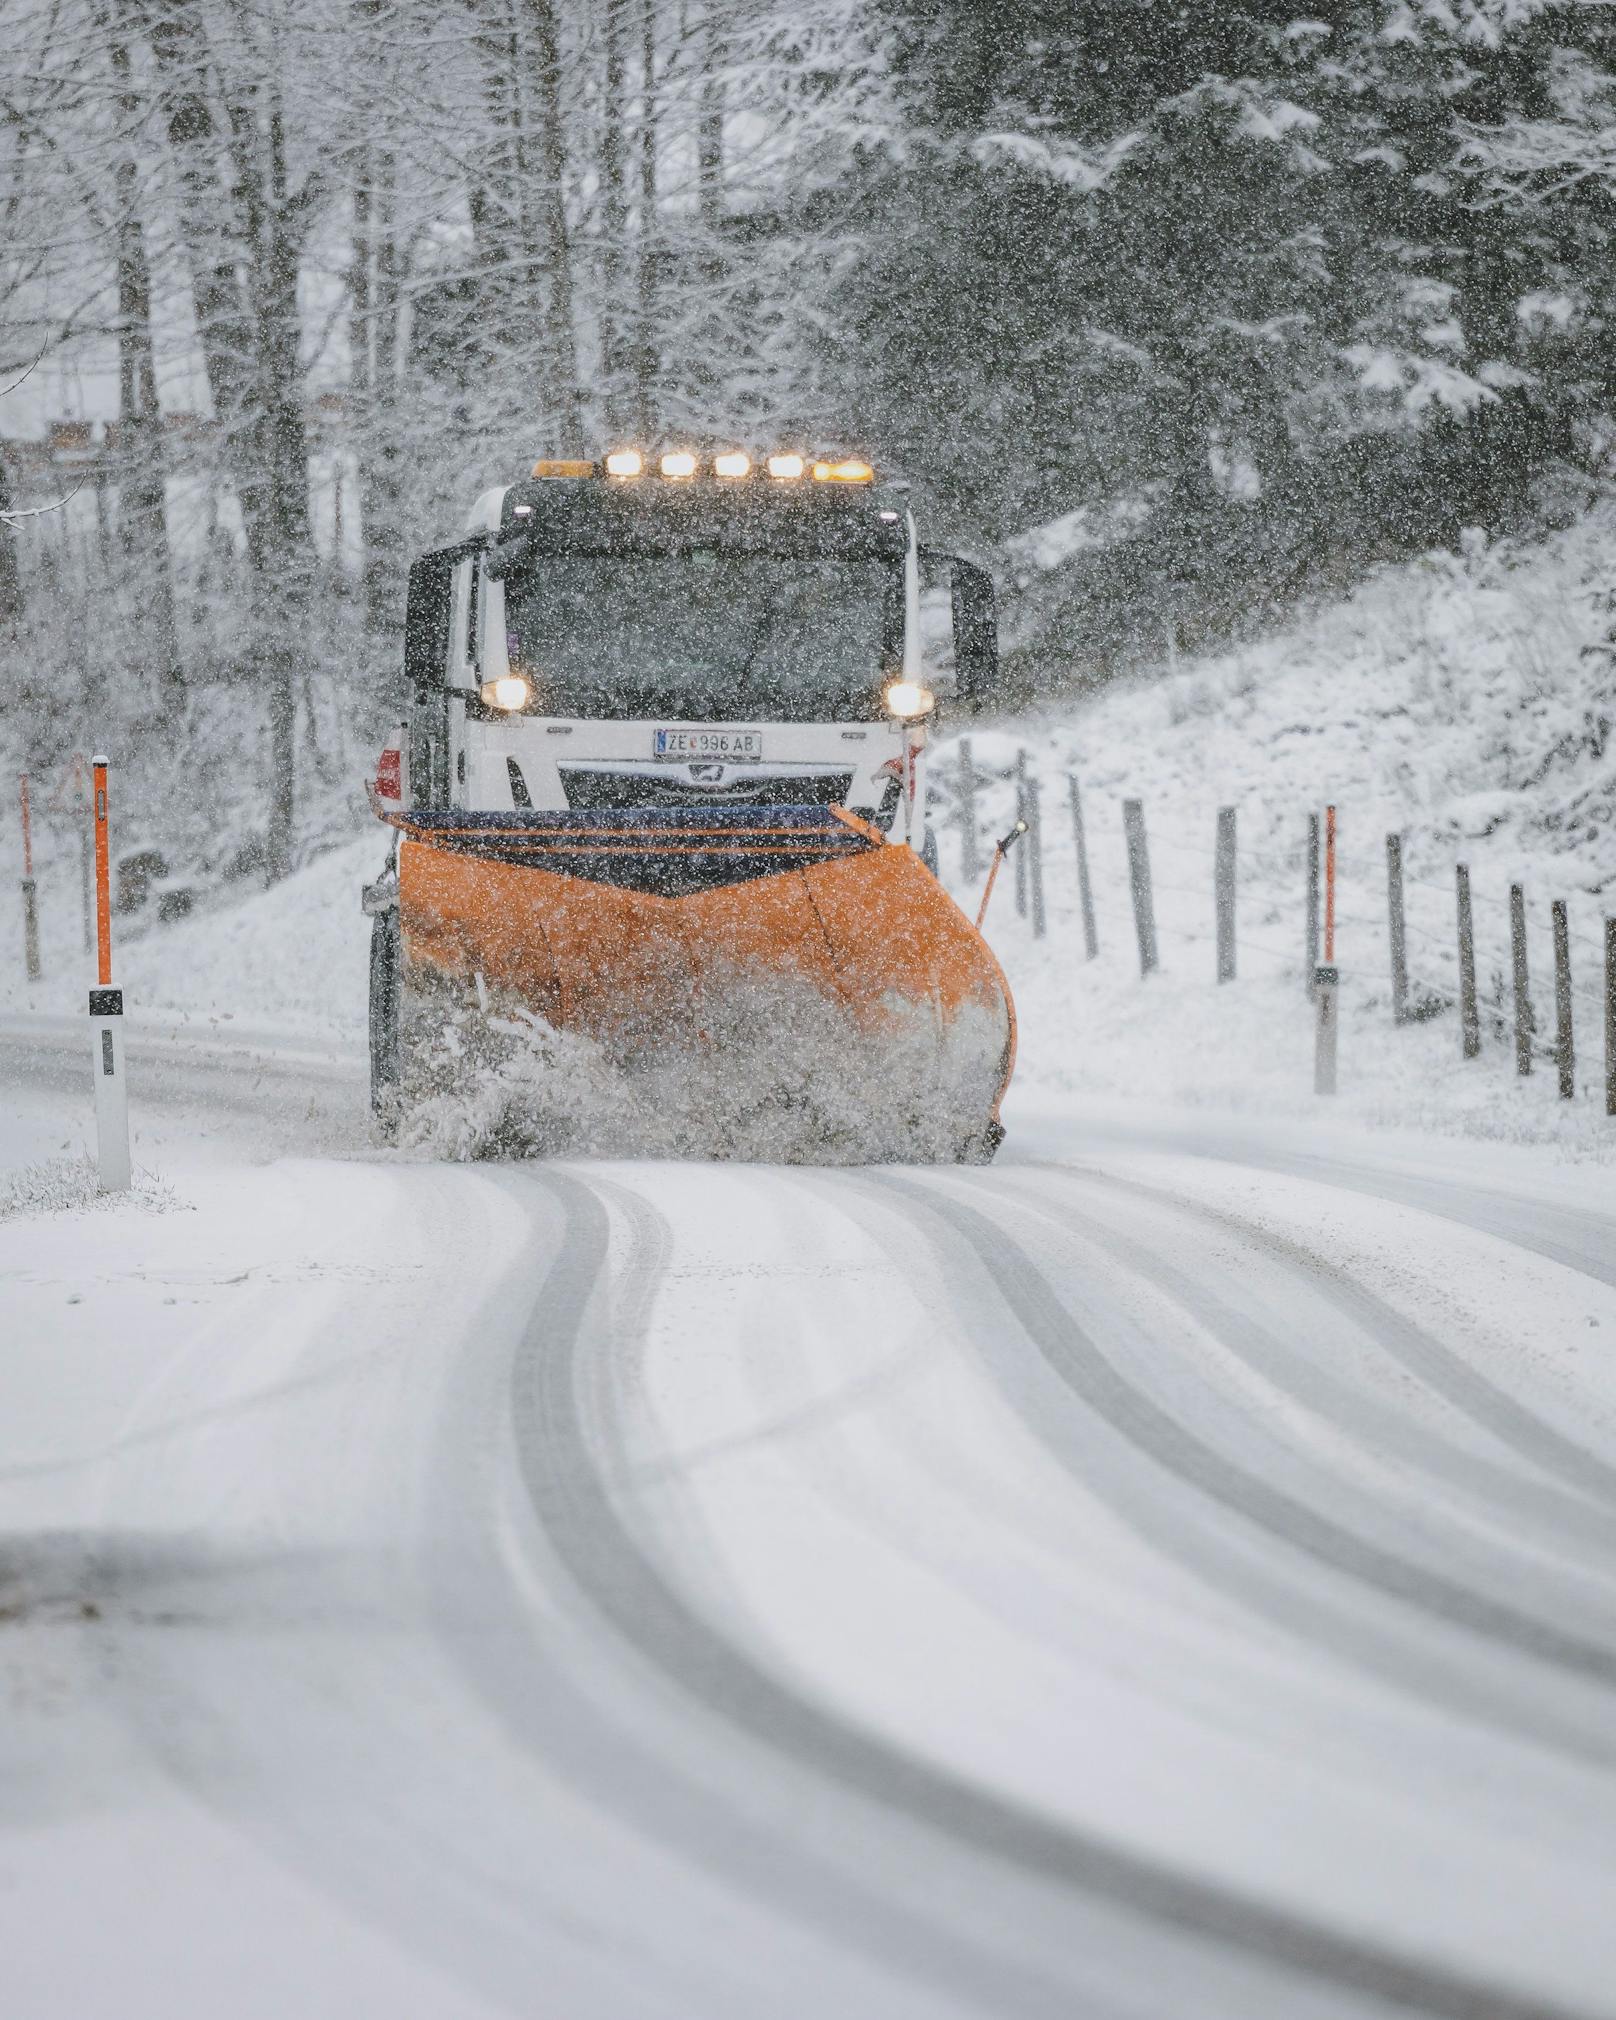 Fahrzeug des Winterdienstes bei der Räumung der mit Schnee bedeckten Fahrbahn, aufgenommen am 22. November 2022 in Kaprun.